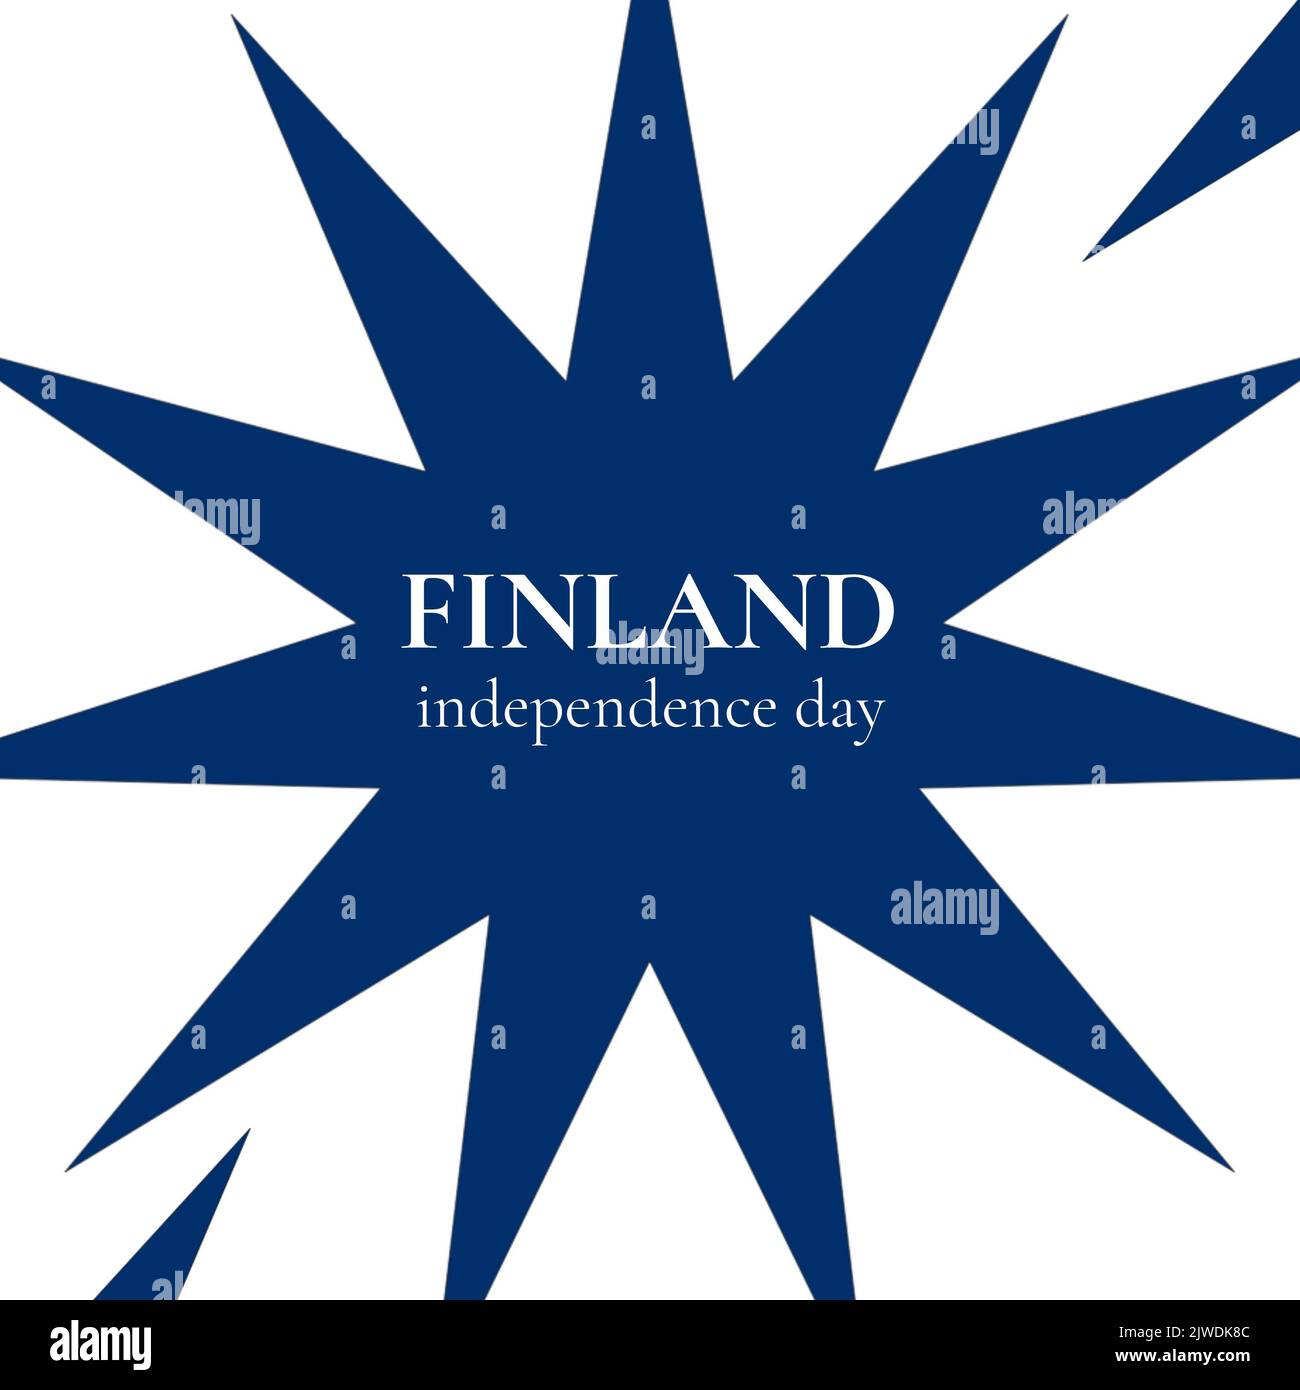 Ilustración del texto del día de la independencia de finlandia en forma de estrella azul sobre fondo blanco, espacio de copia Foto de stock